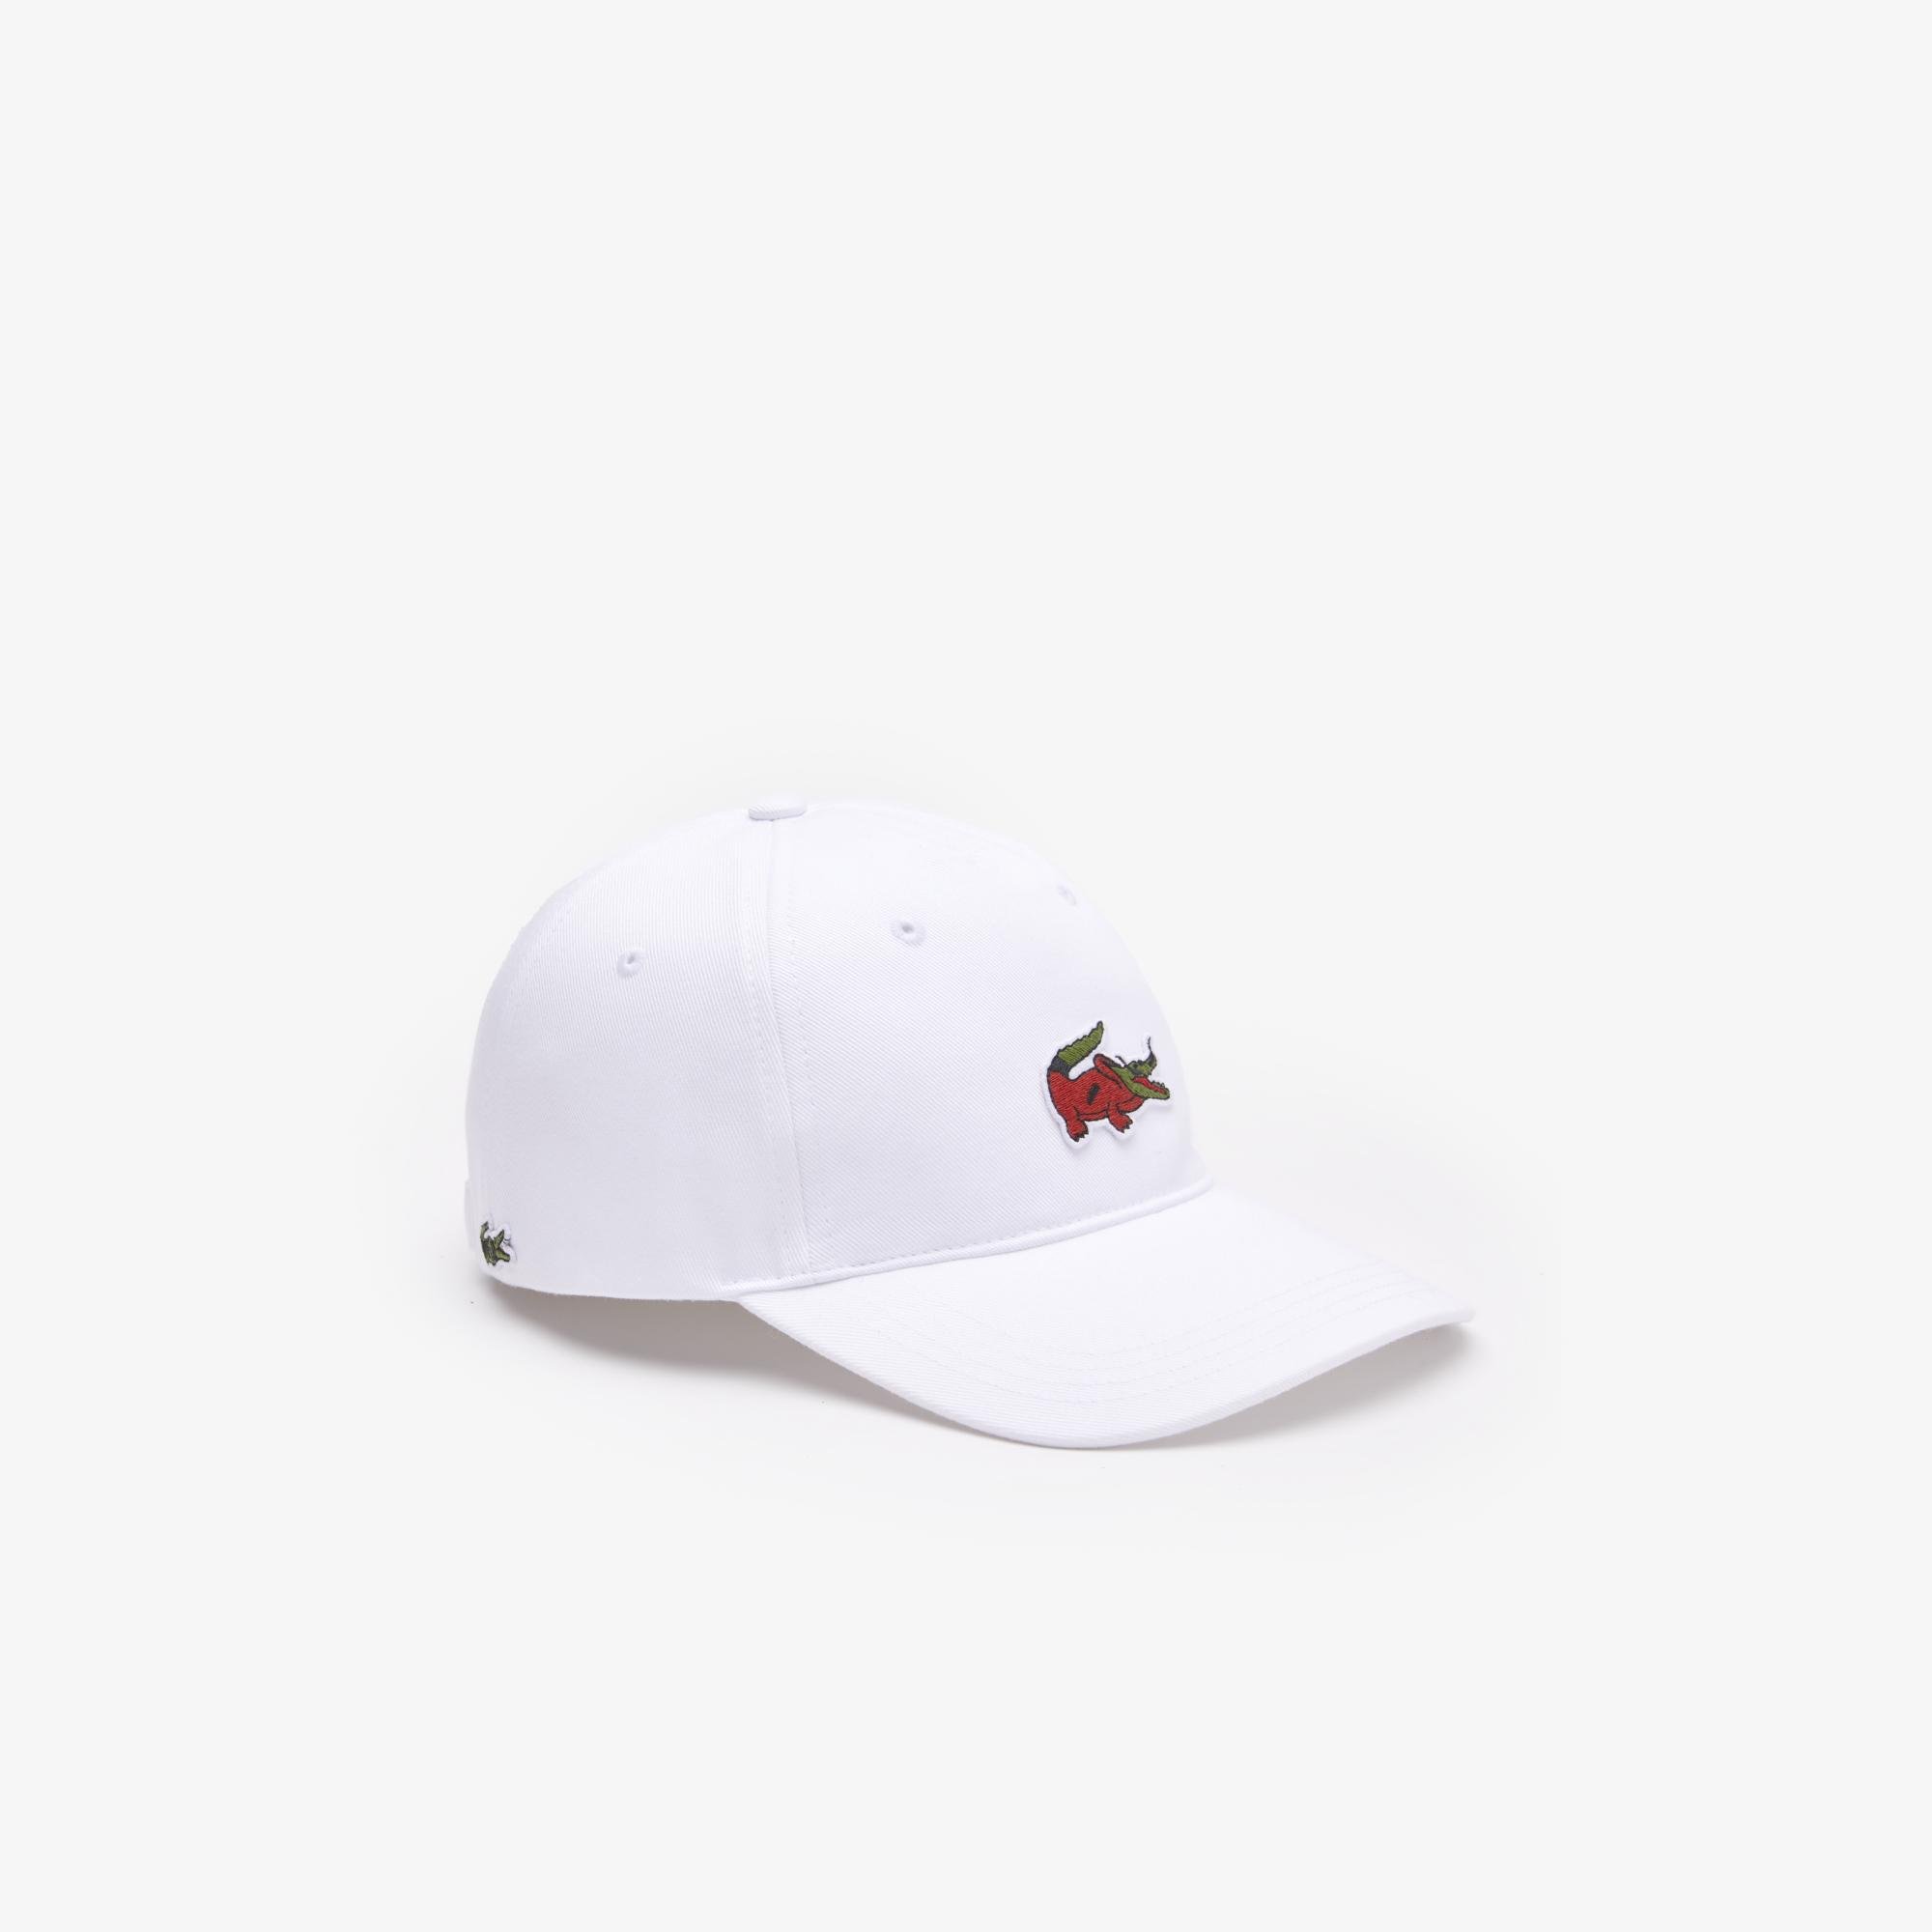 Lacoste x Netflix Unisex Beyaz Şapka. 2